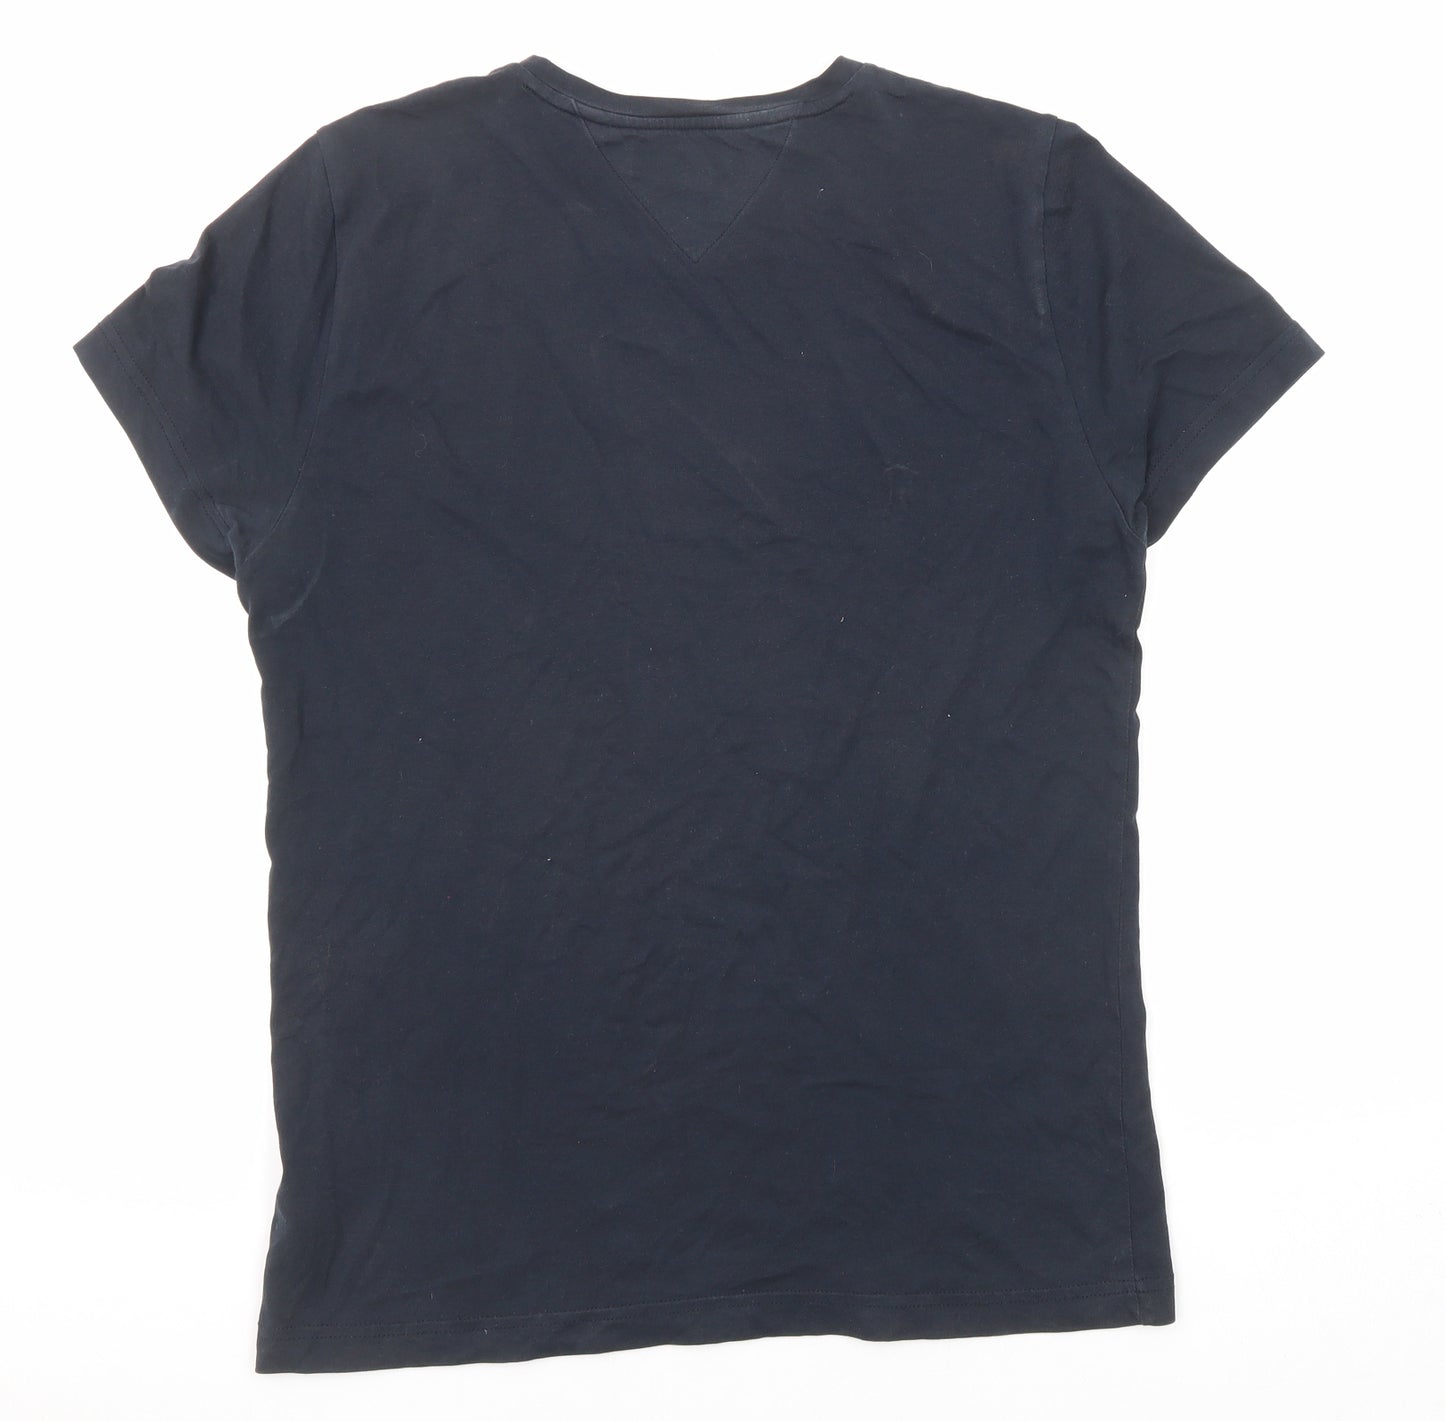 Tommy Hilfiger Mens Blue Cotton T-Shirt Size M Crew Neck